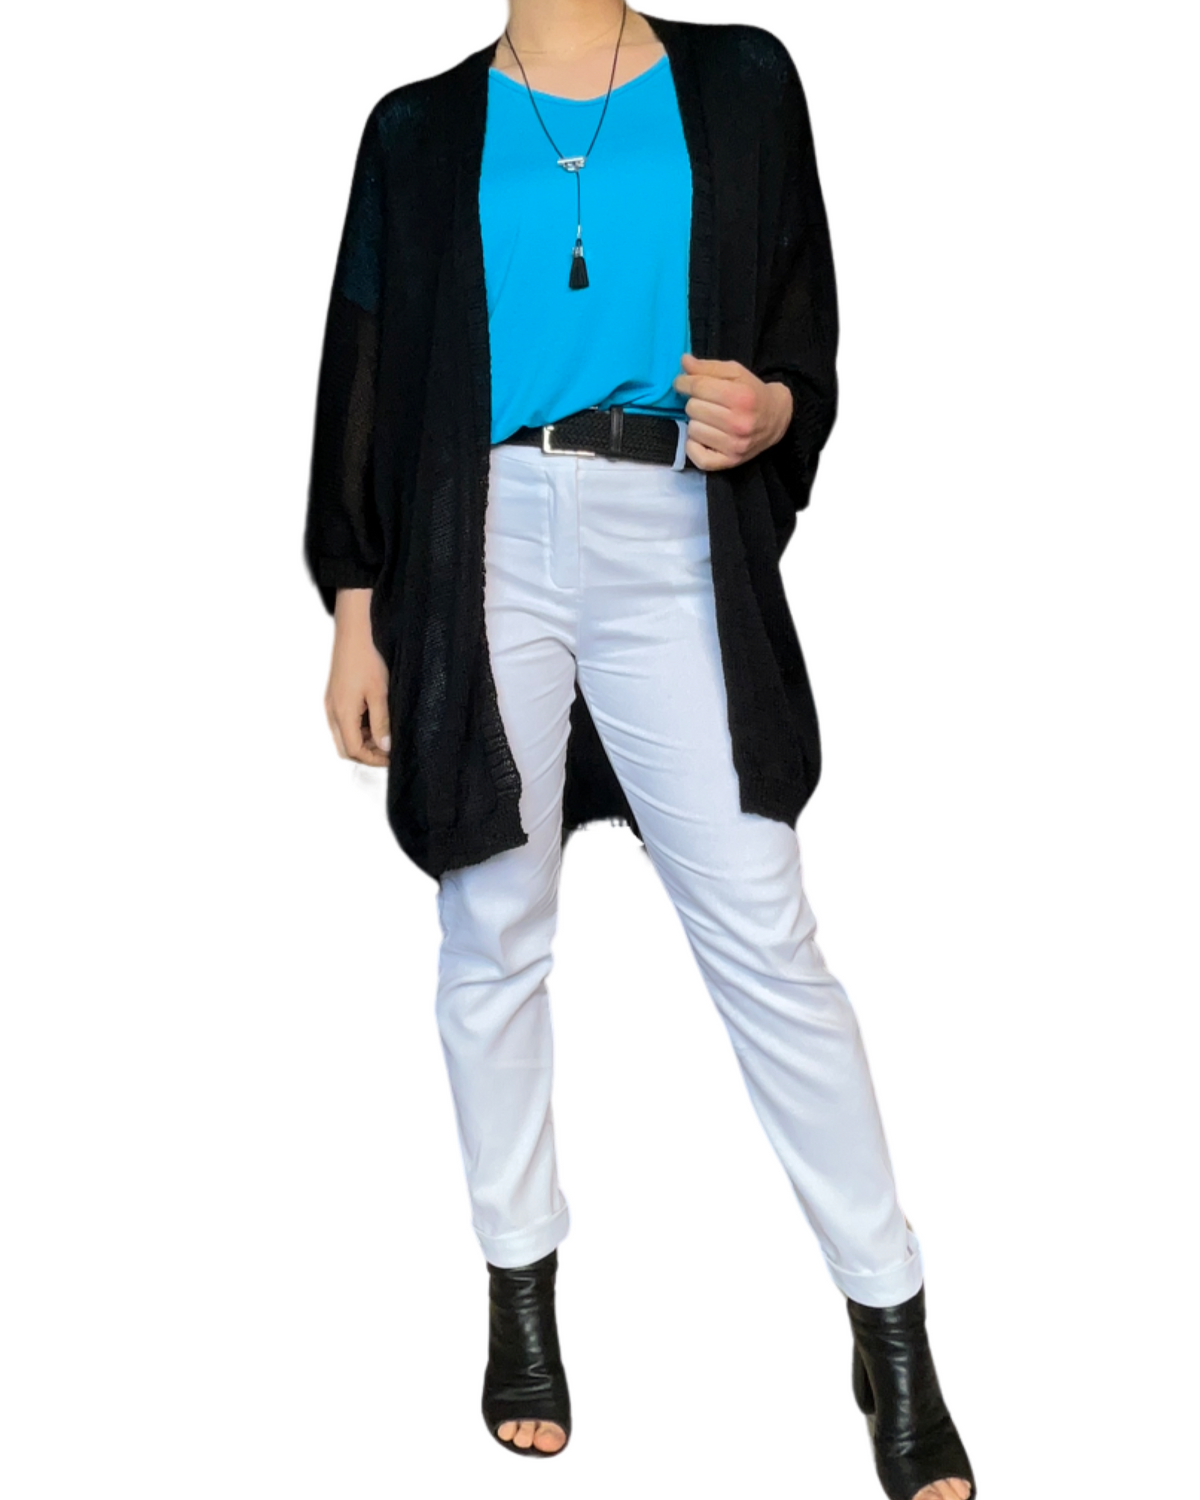 Pantalon cigarette blanc pour femme avec ceinture noire avec t-shirt turquoise, cardigan noir et collier long.